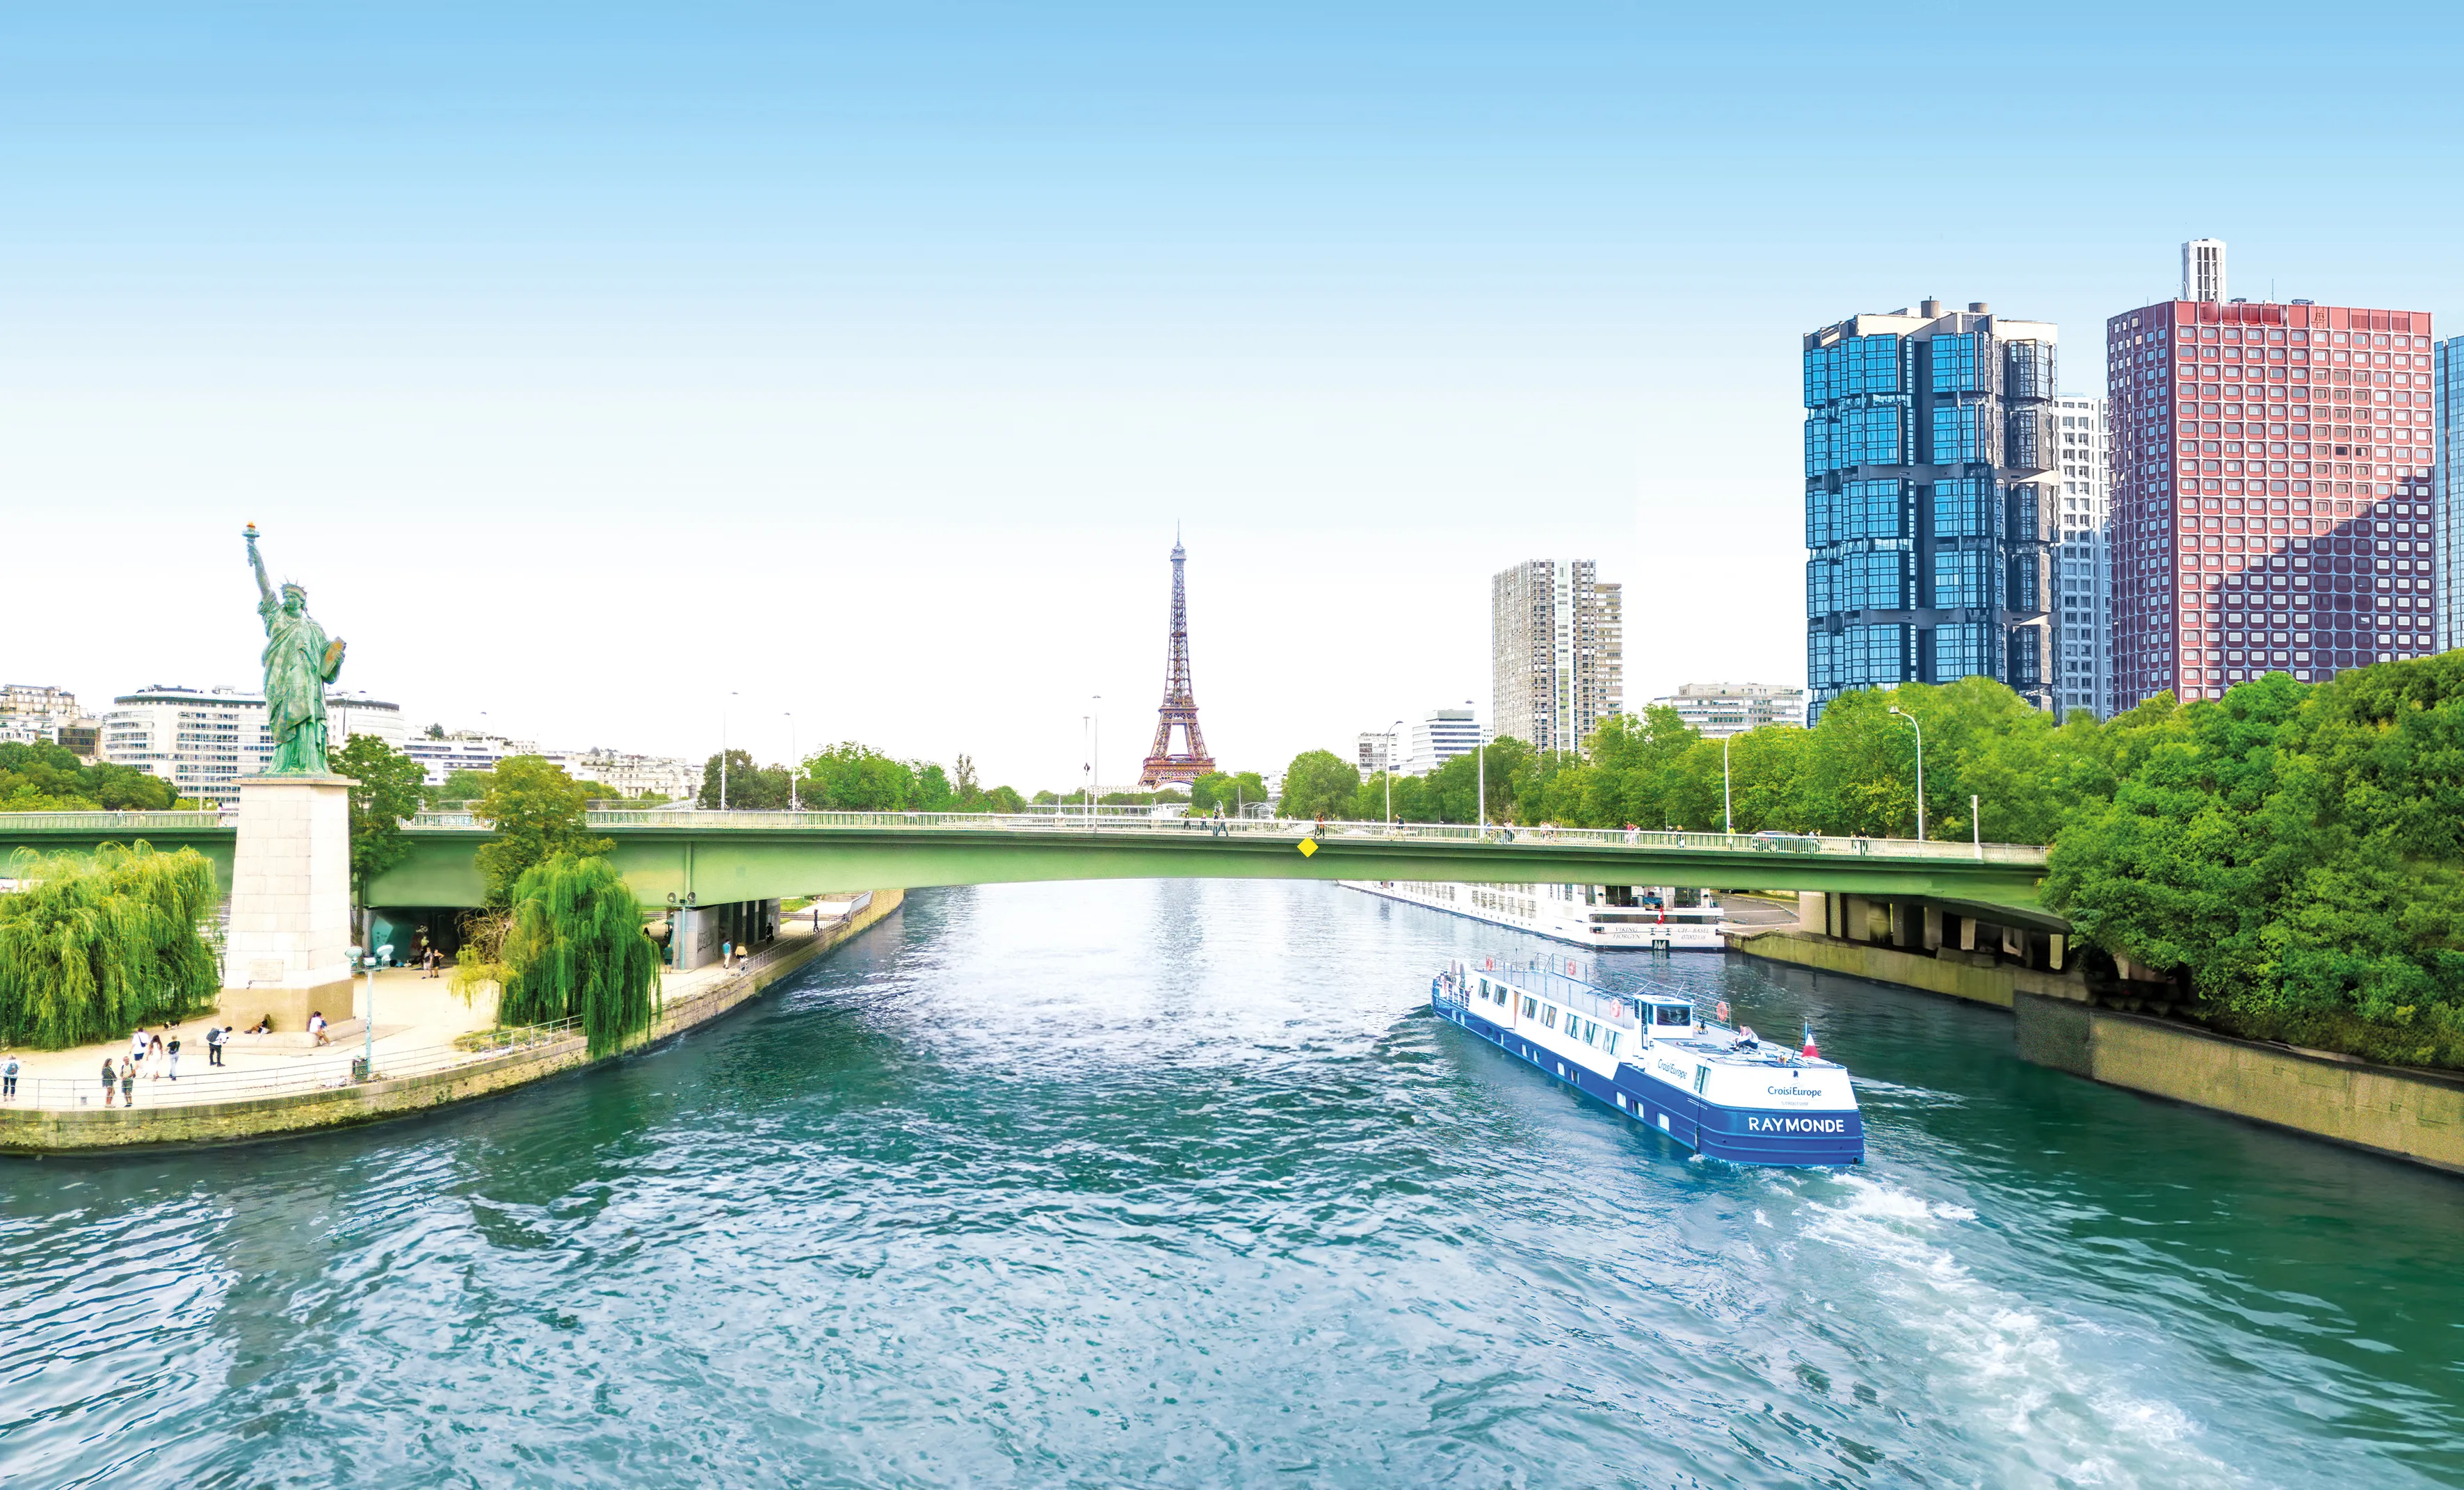 La péniche Raymonde approchant la Tour Eiffel 